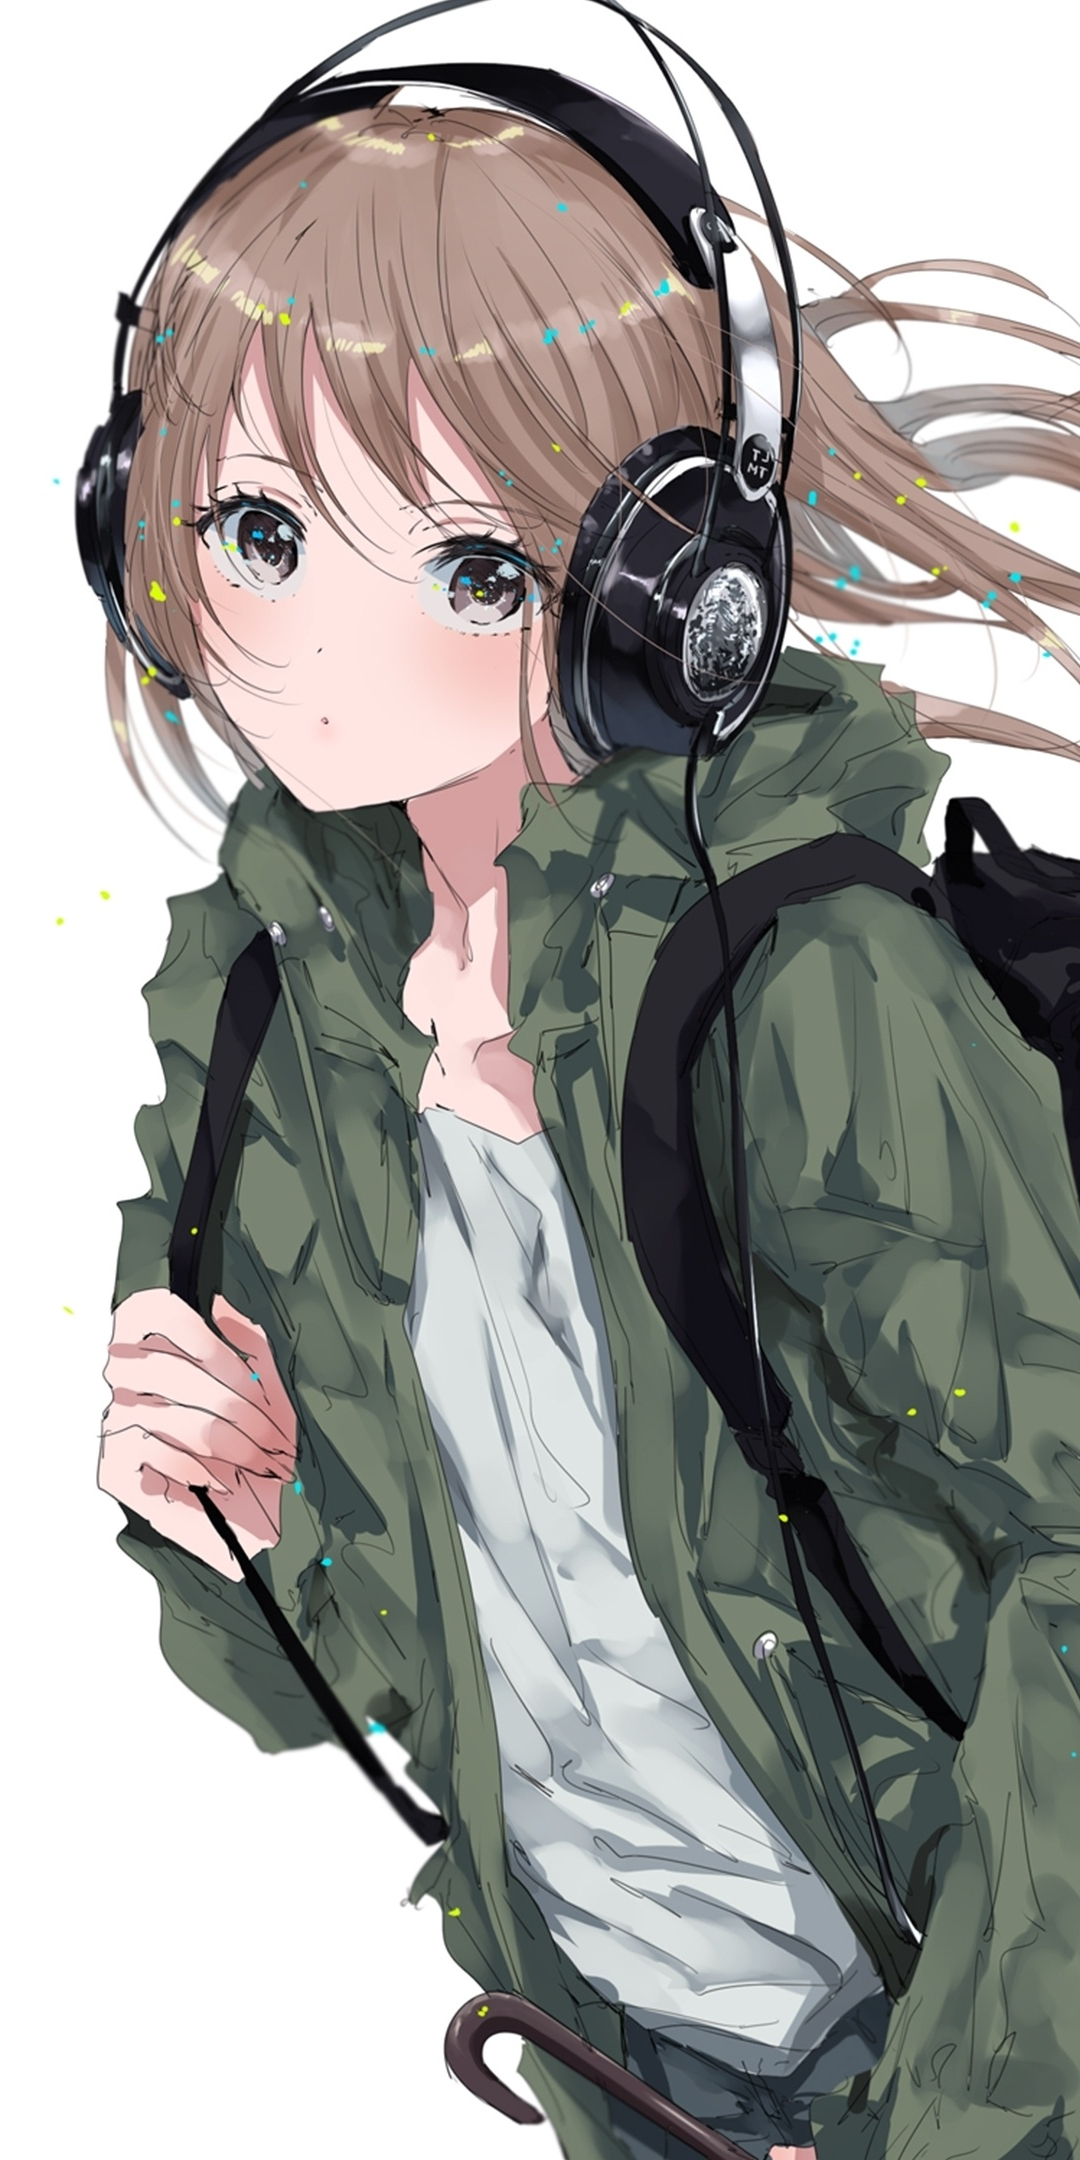 Download 1080x2160 Wallpaper Original Anime Girl Bag Headphone